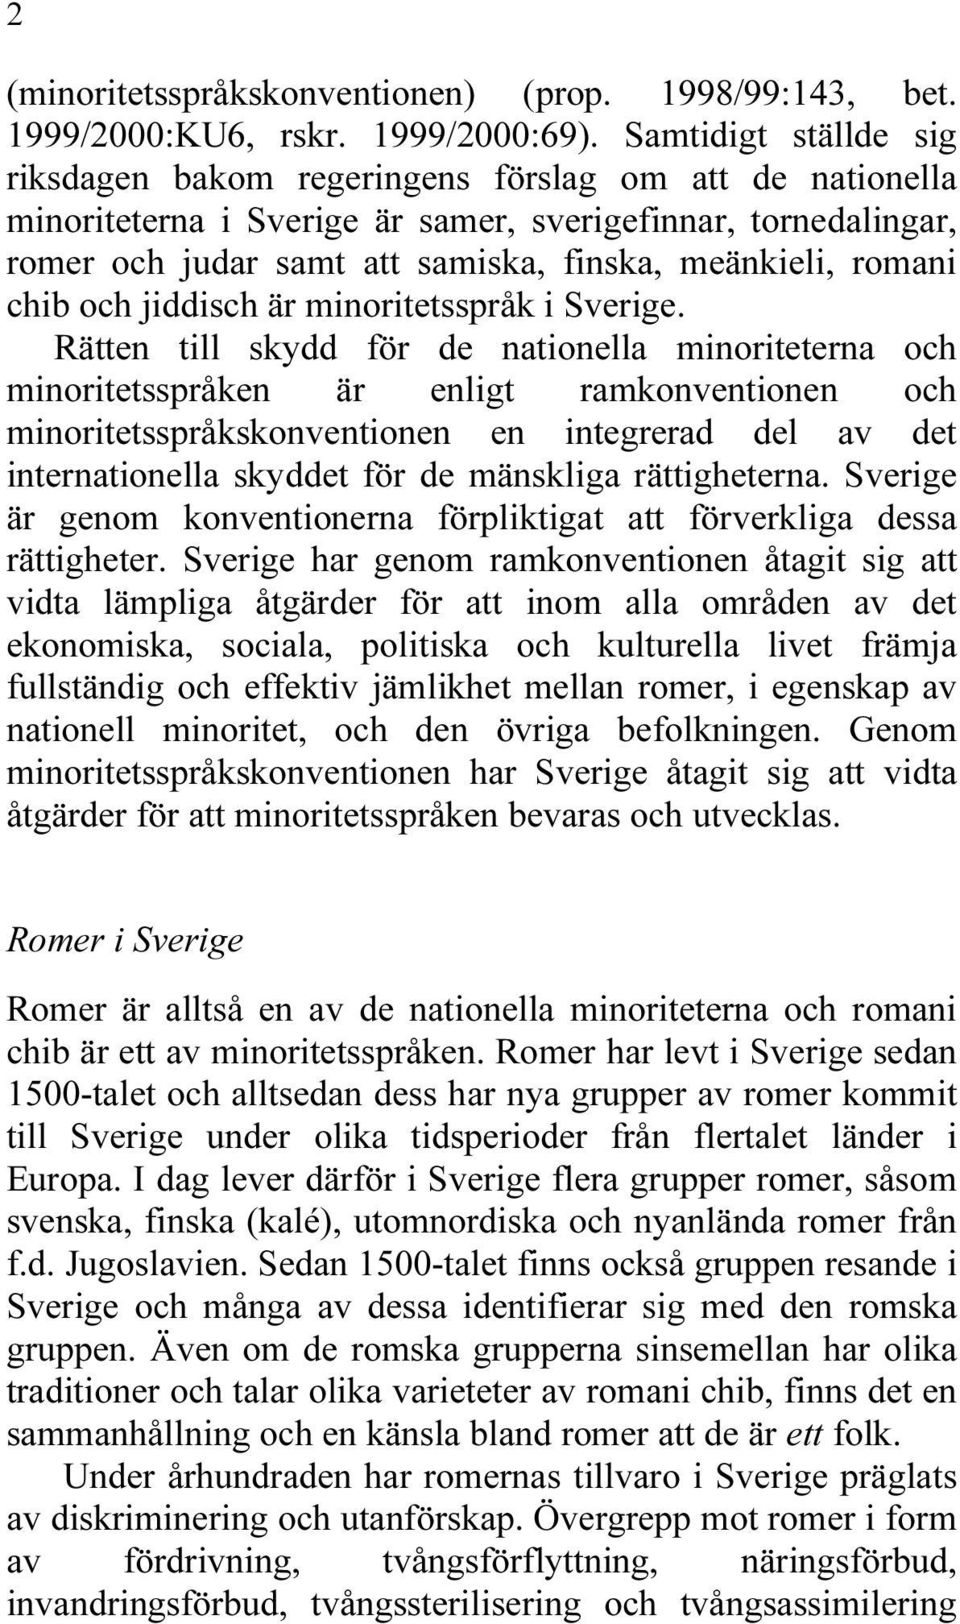 romani chib och jiddisch är minoritetsspråk i Sverige.